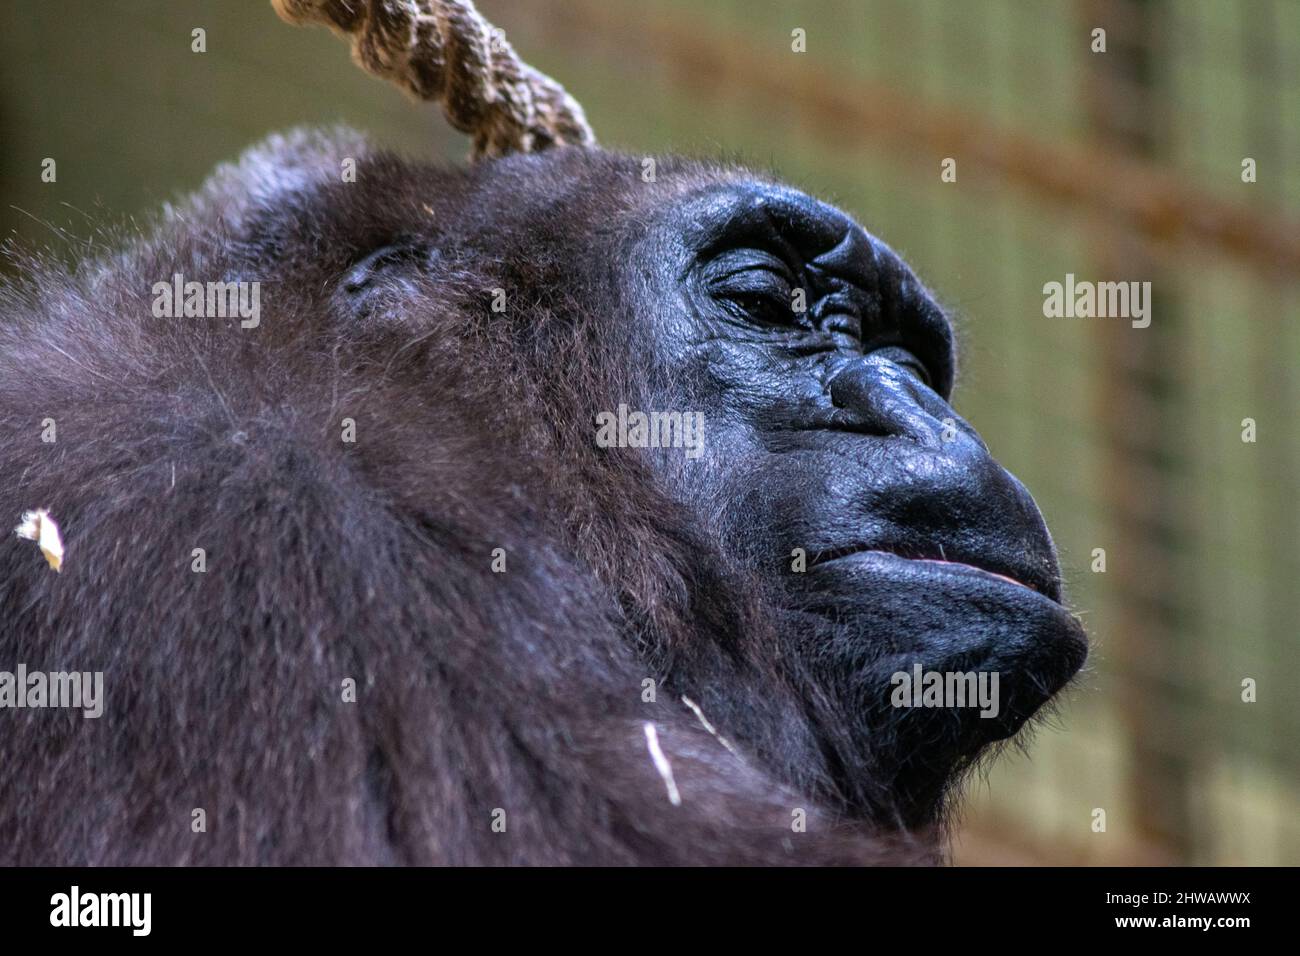 Hermoso retrato de gorila, gorila descansando tranquilamente. Animales grandes descansando. Los gorilas son herbívoros, predominantemente grandes simios terrestres. Foto de stock